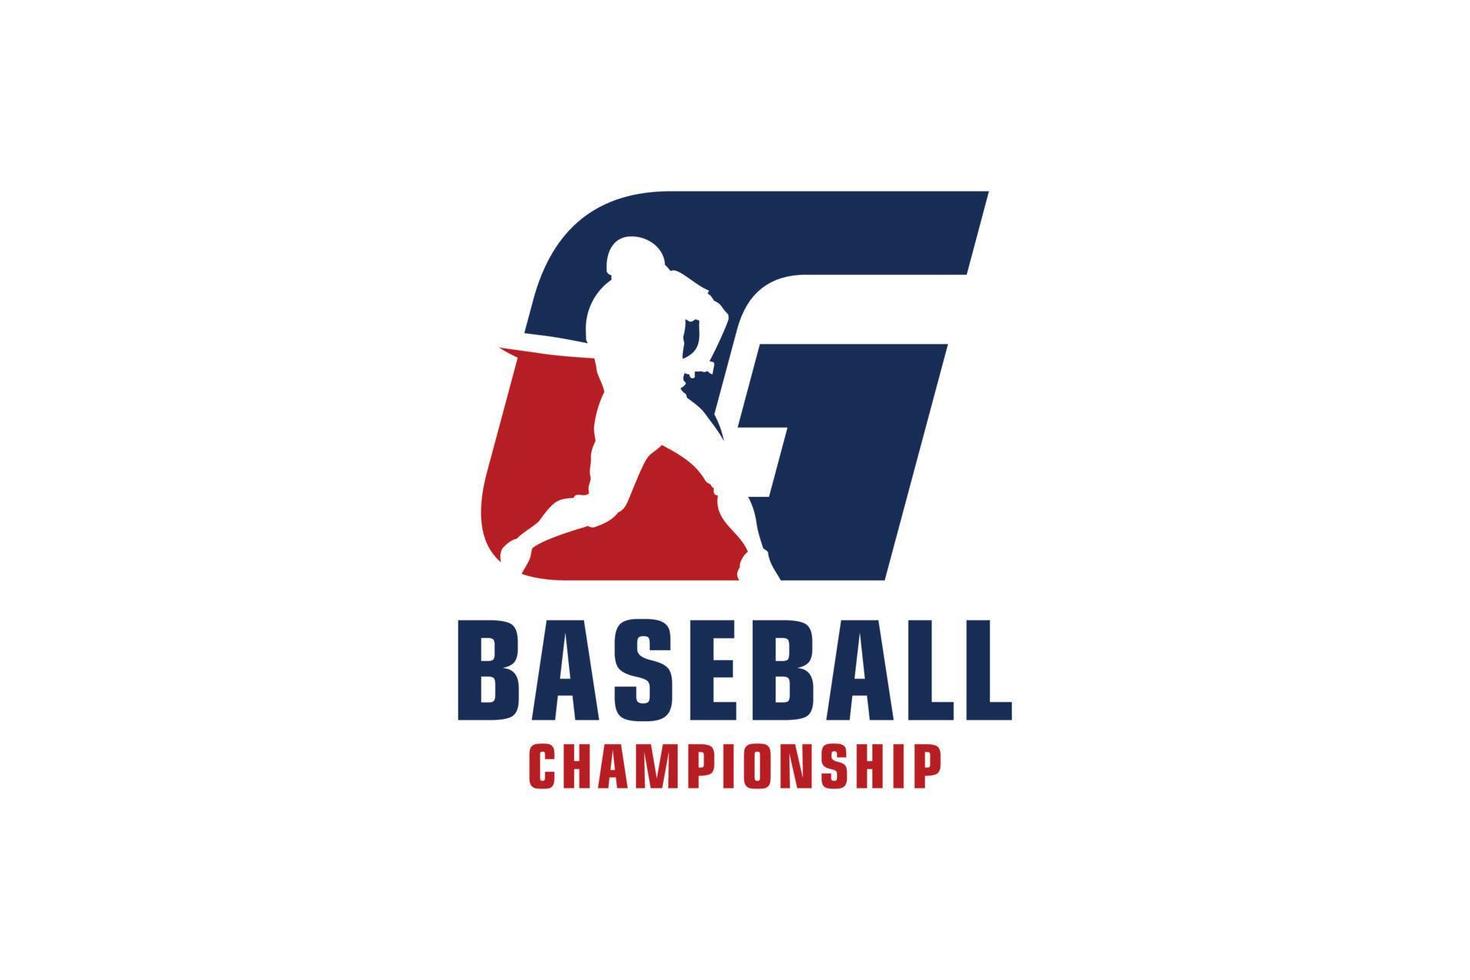 Buchstabe g mit Baseball-Logo-Design. Vektordesign-Vorlagenelemente für Sportteams oder Corporate Identity. vektor